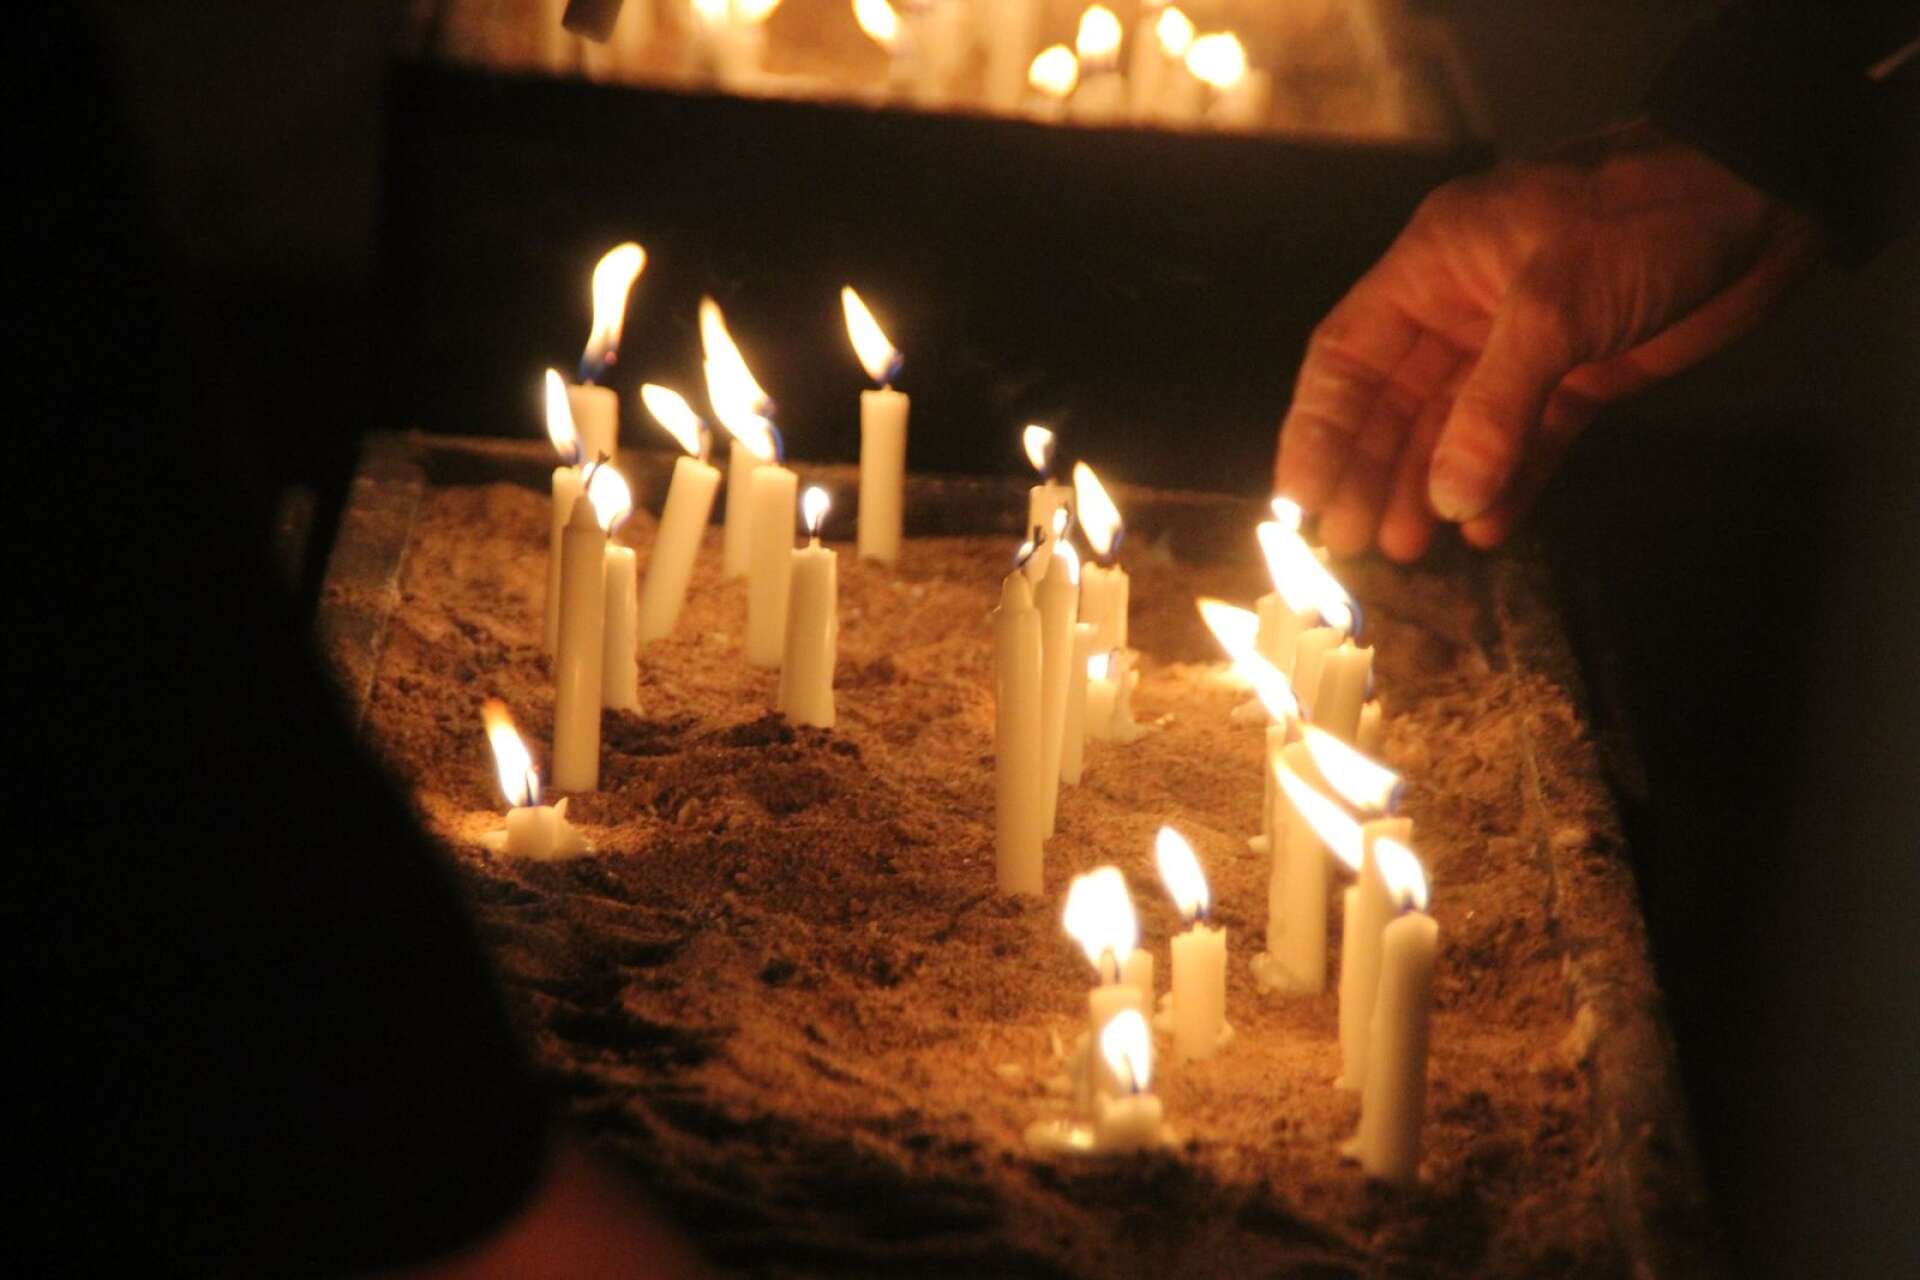 Att tända ljus till minne av någon var en uppskattad aktivitet i Grästorps pastorats tält.